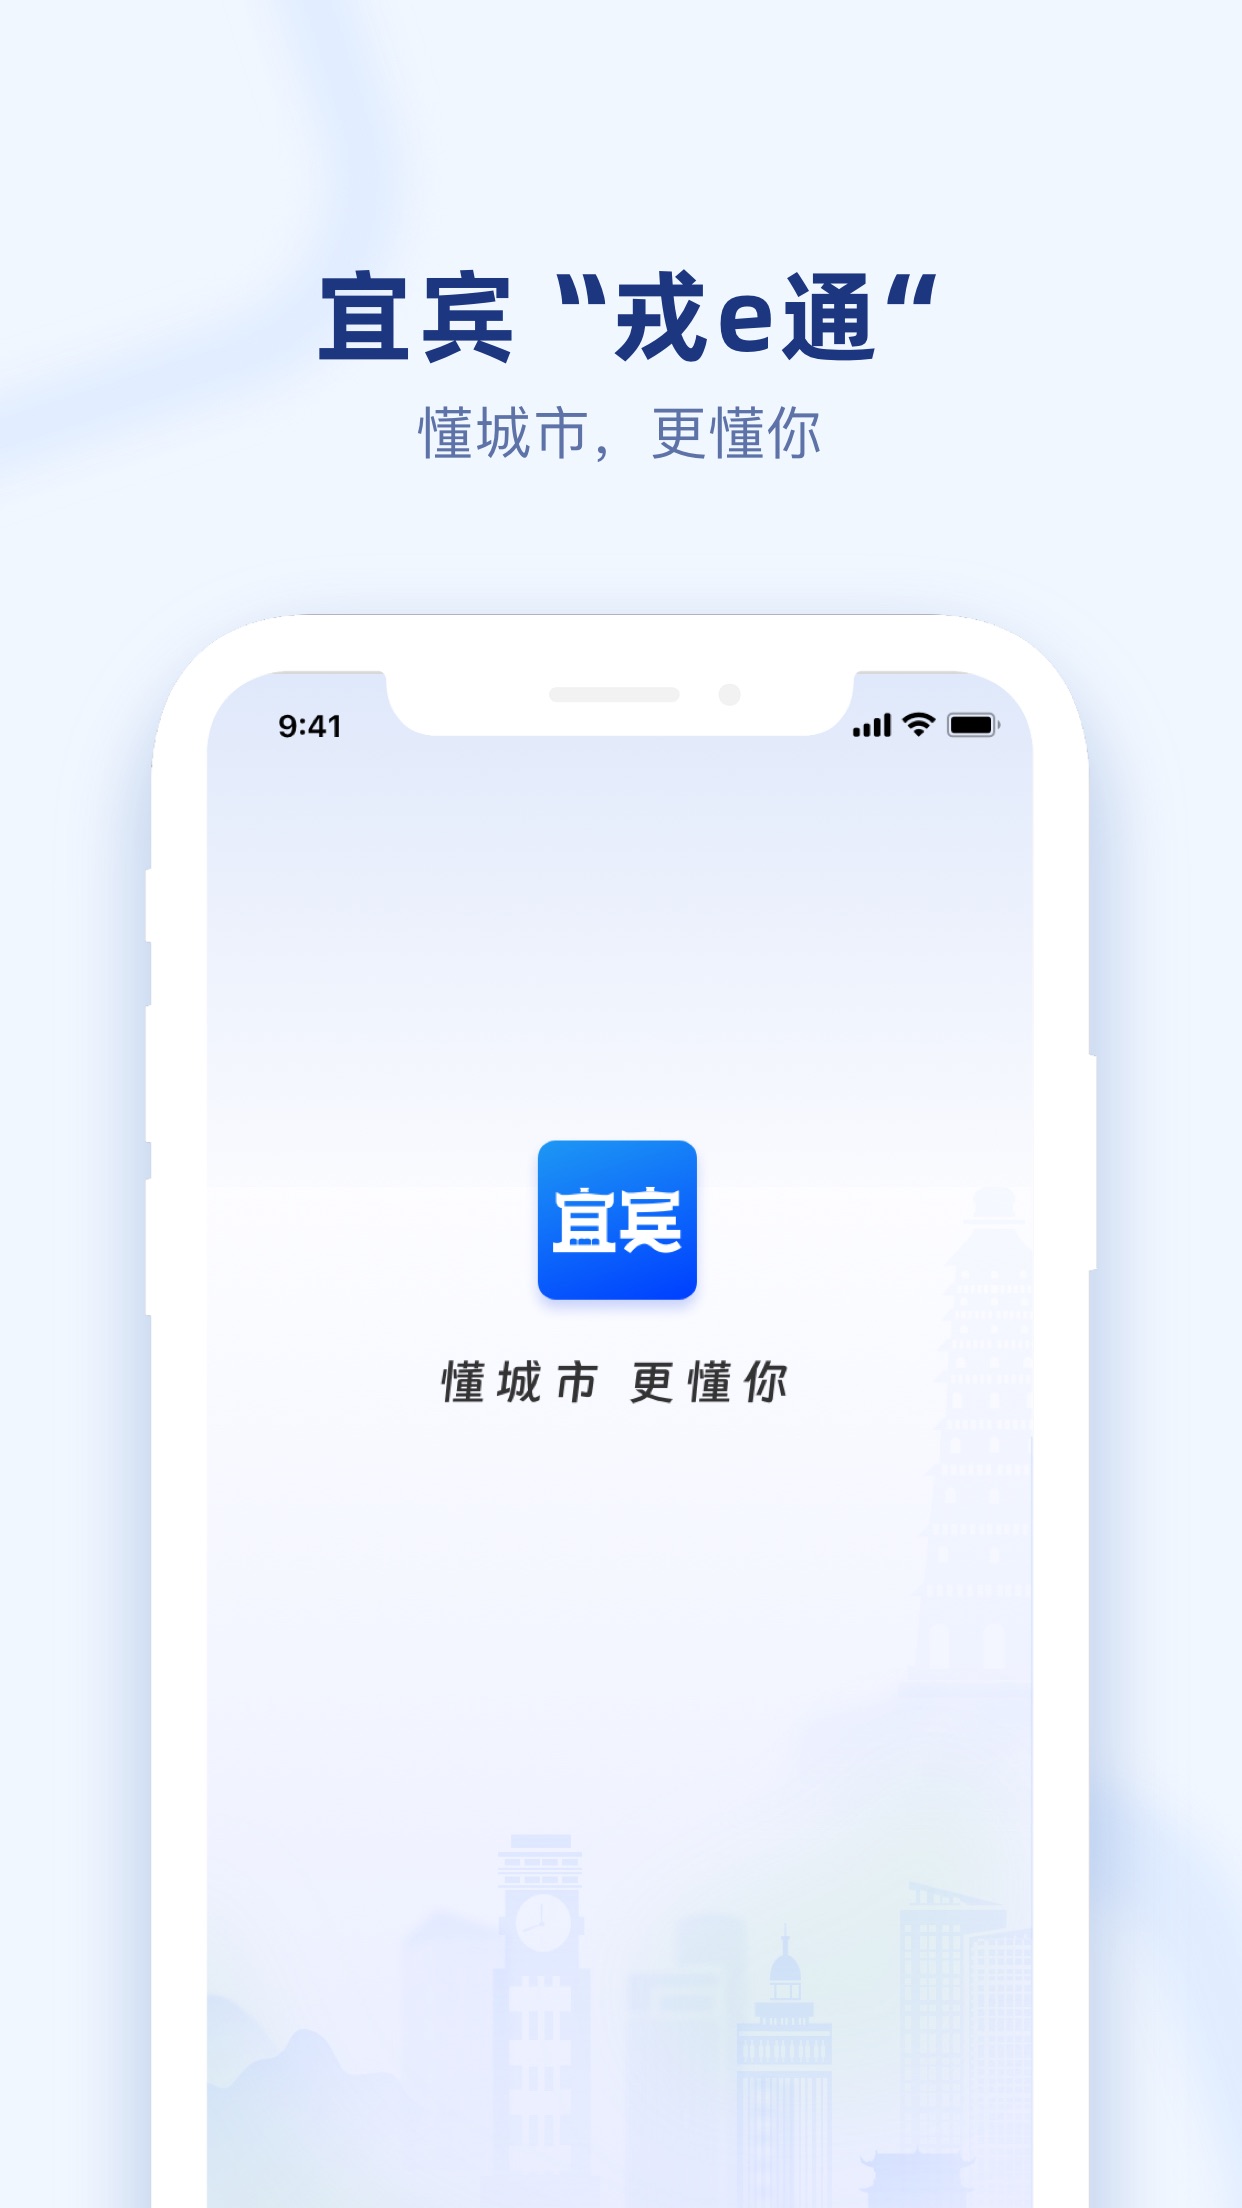 戎e通app官方版截图1: